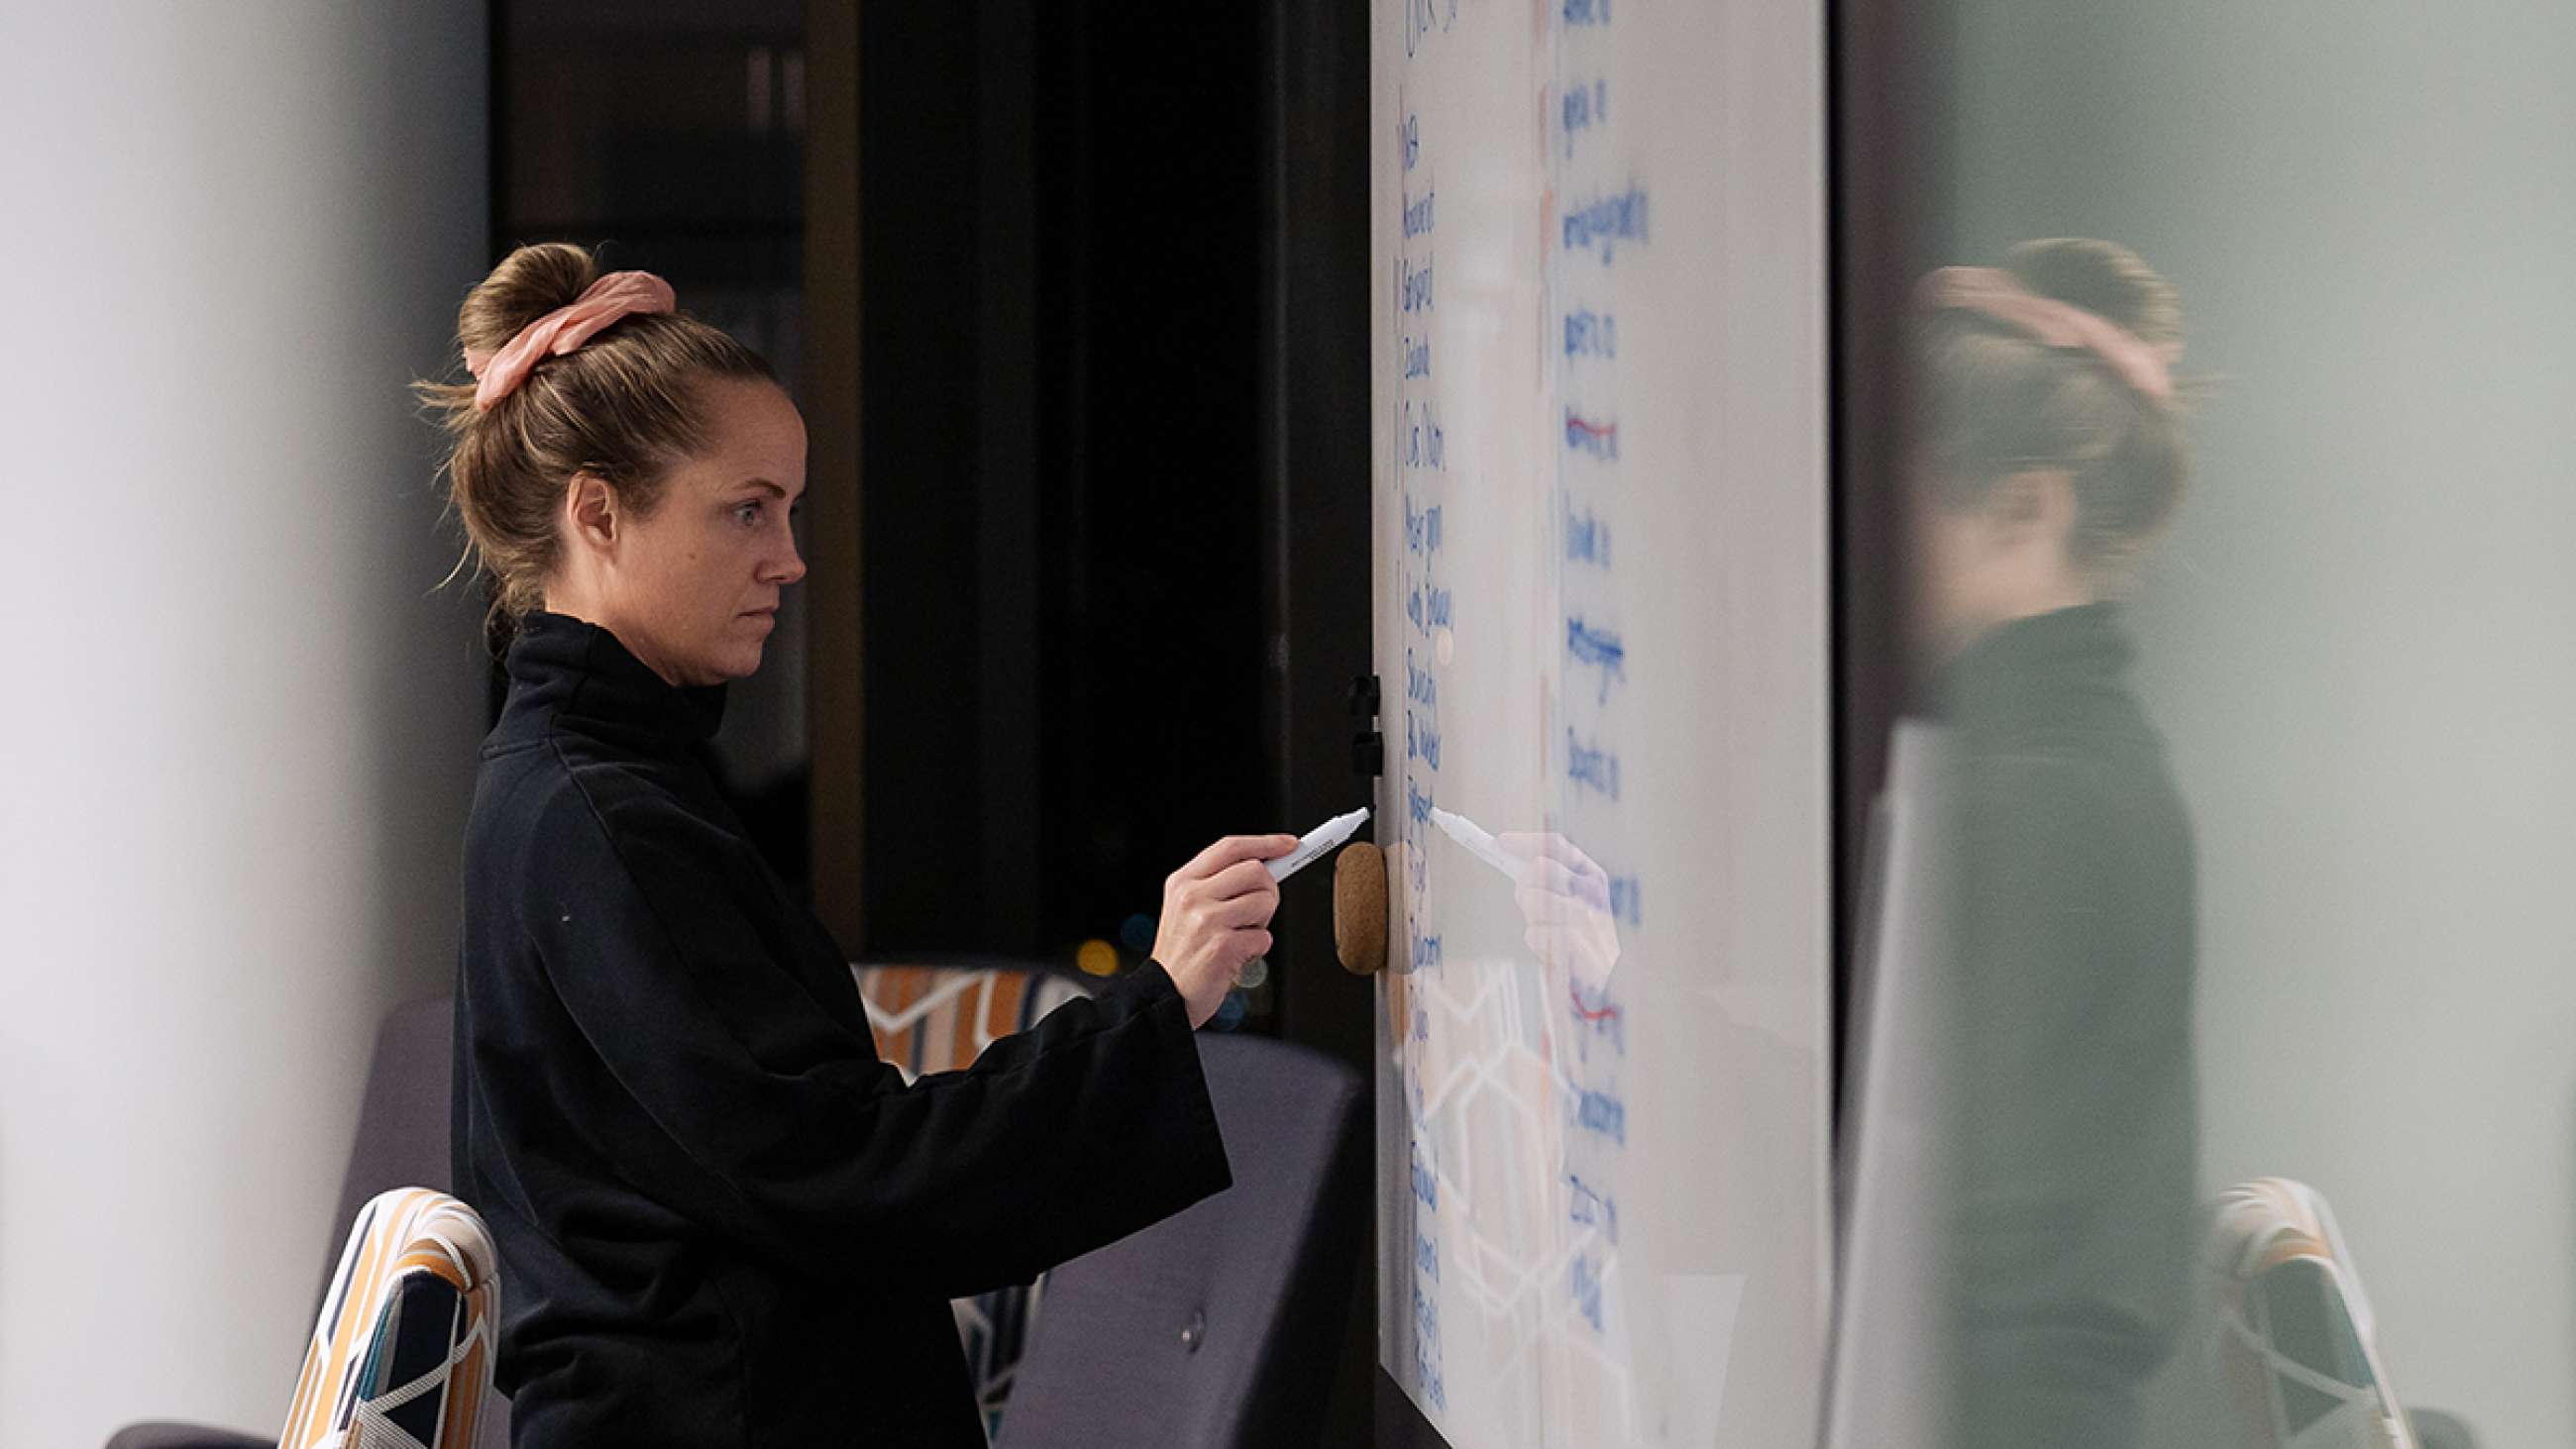 CRO-ekspert Monica Solberg skriver med tusch på en tavle